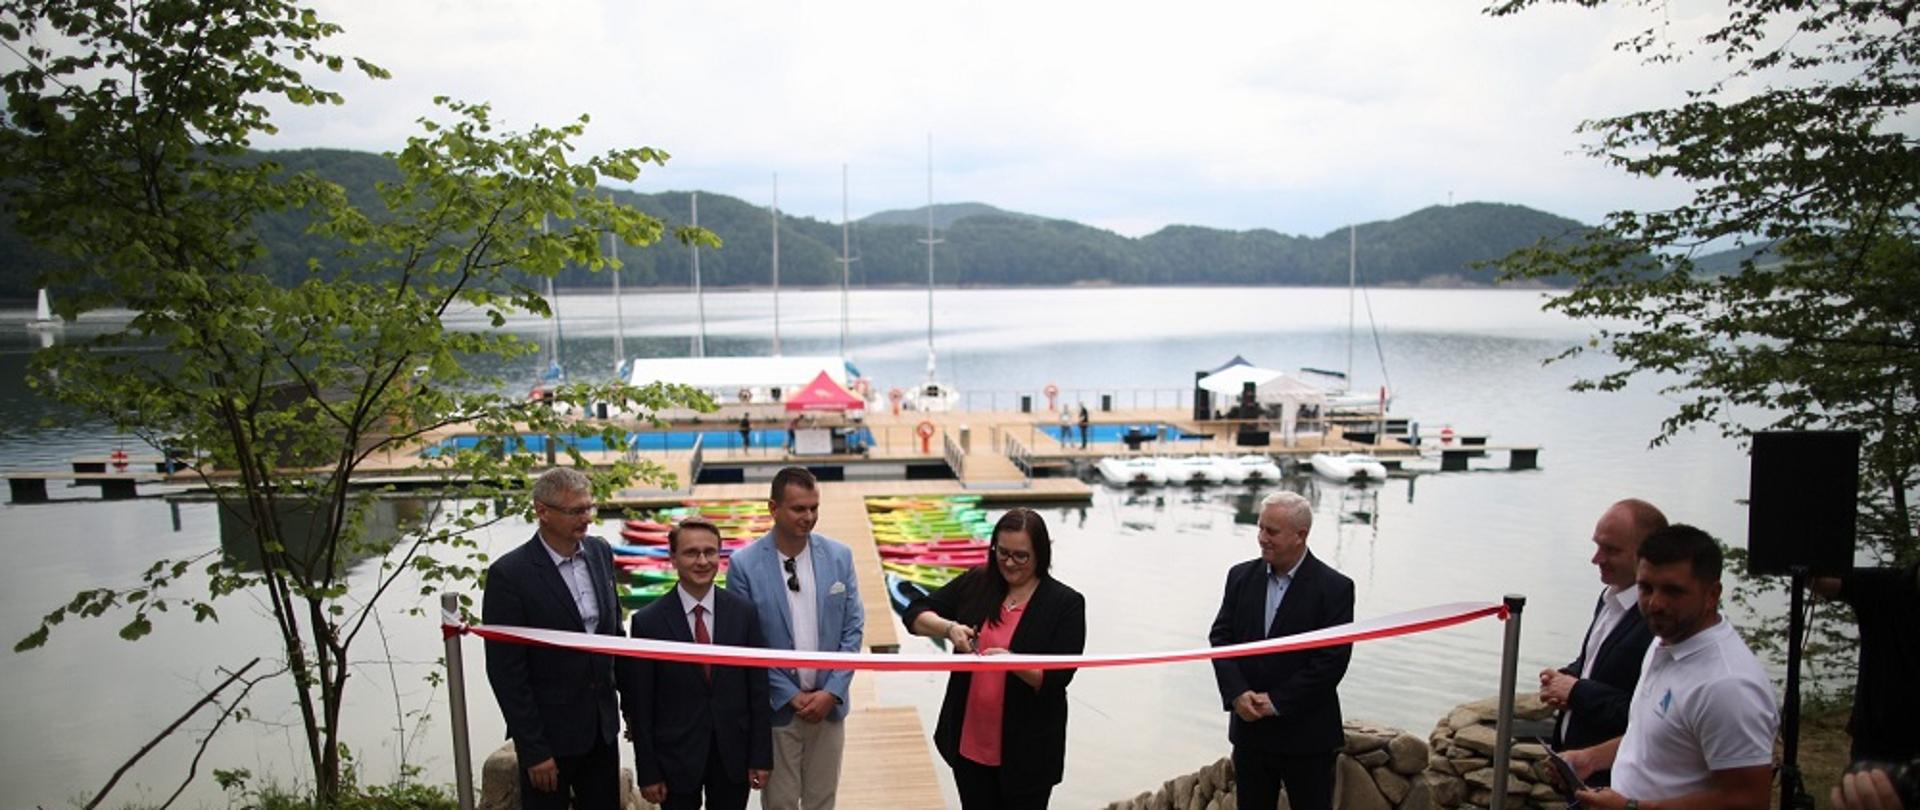 Zdjęcie jeziora i mariny. Biało-czerwoną wstęgę przecina minister Jarosińska-Jedynak, na zdjęciu stoi obok 6 mężczyzn.